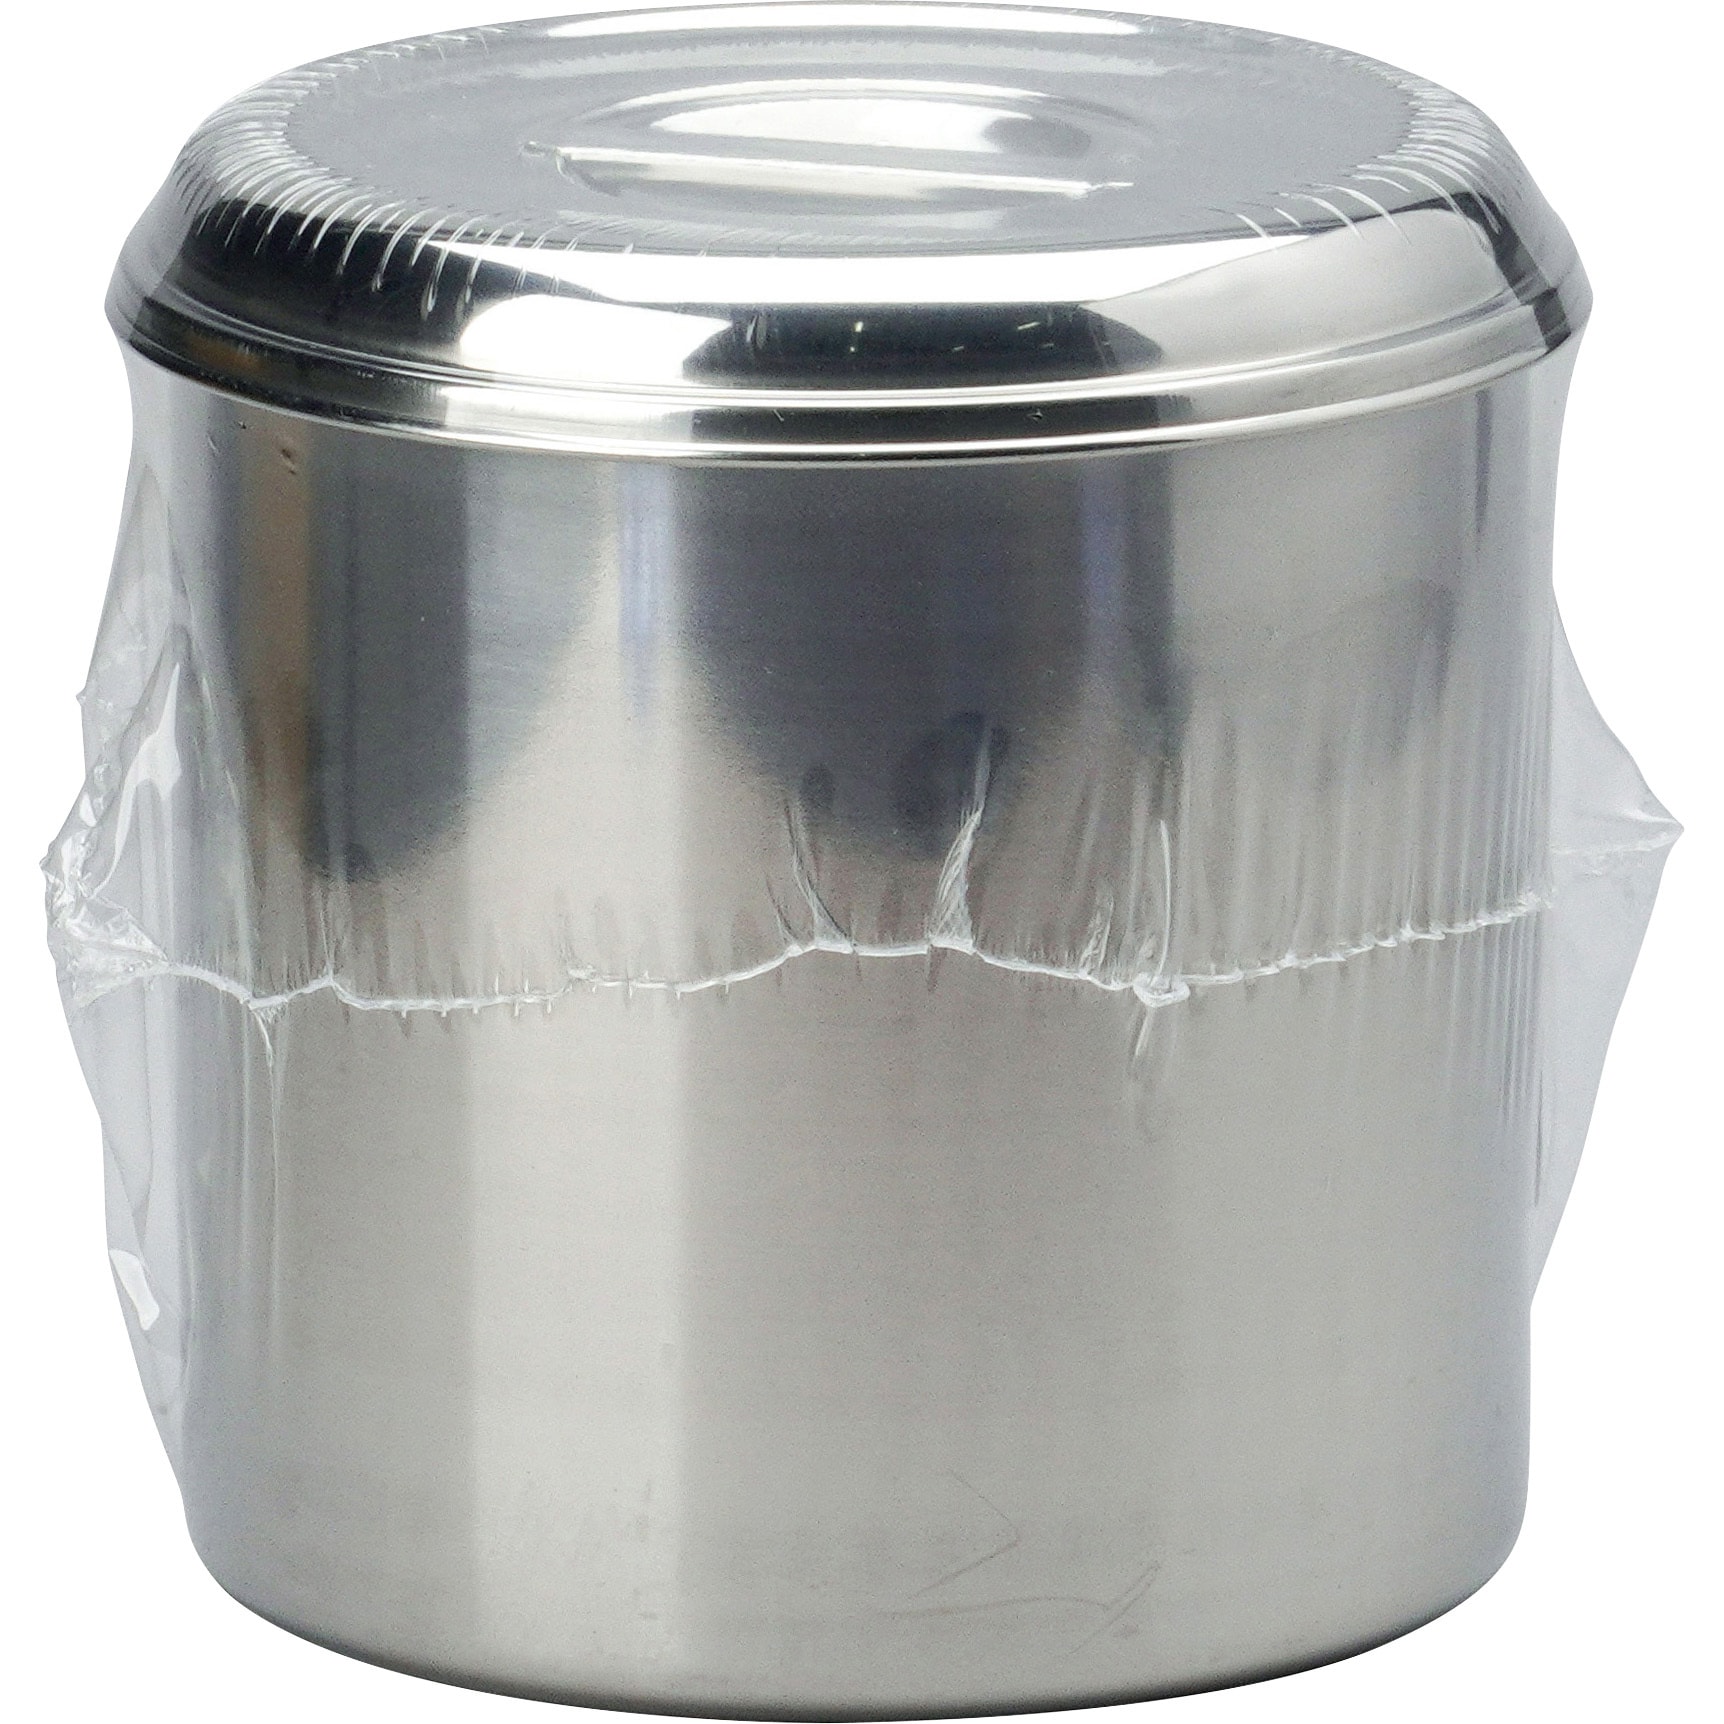 エムテートリマツ 18-8 テーパーキッチンポット 16cm (019667-016)  Tapered kitchen pot